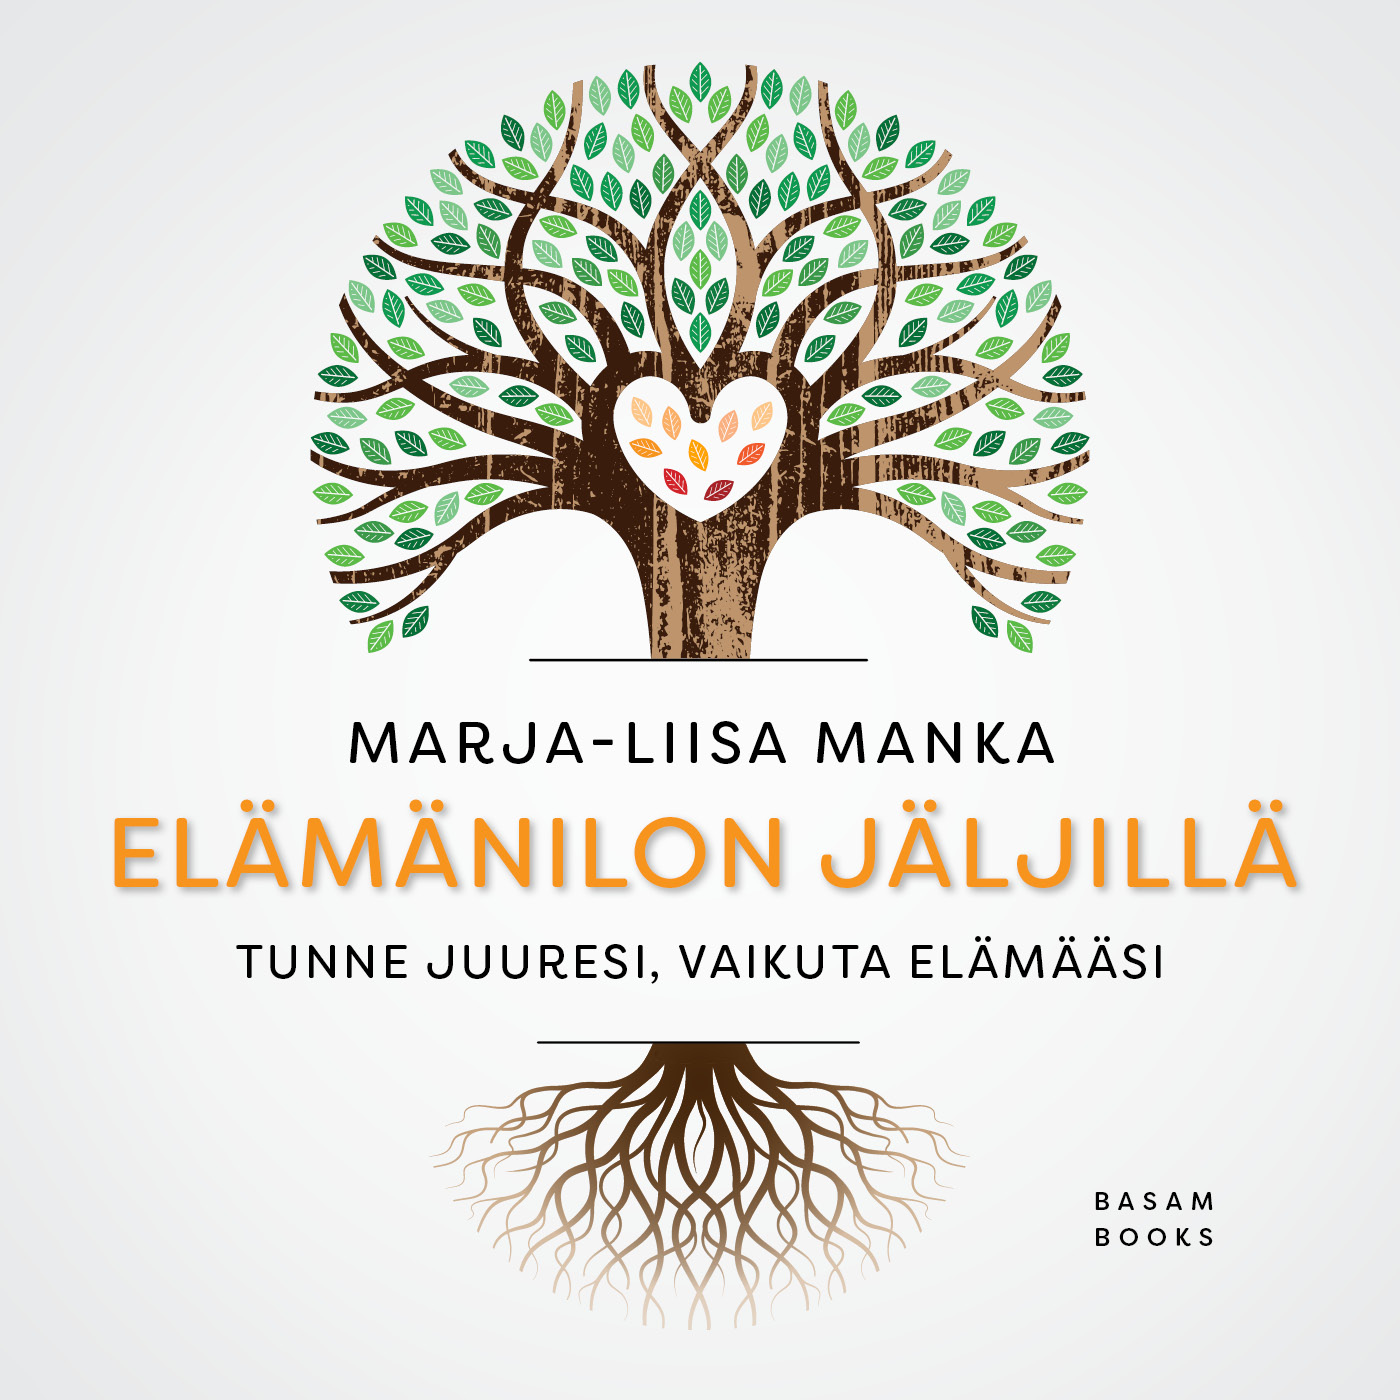 Manka, Marja-Liisa - Elämänilon jäljillä, äänikirja